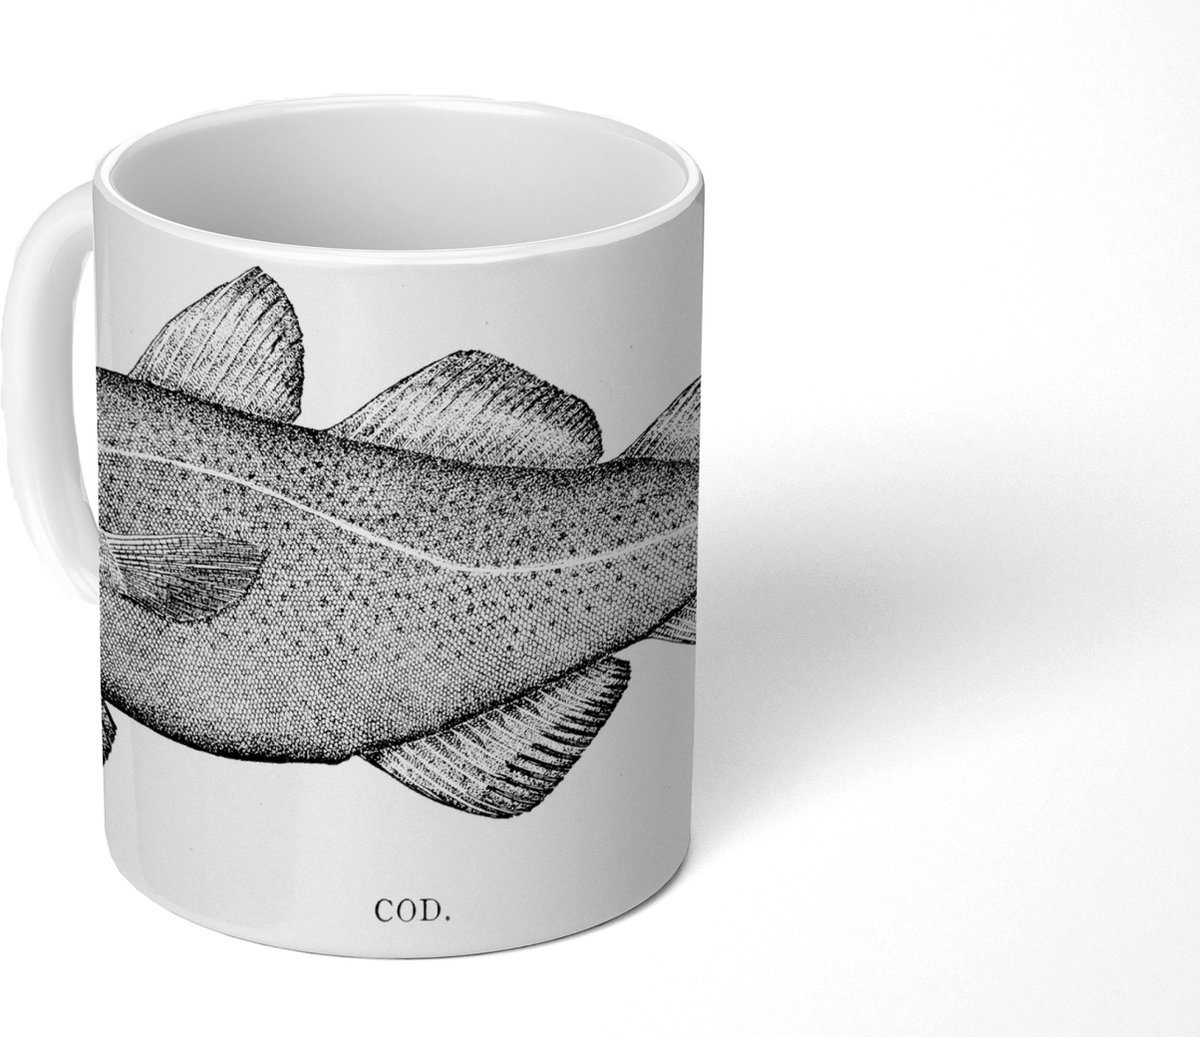 Mok - Koffiemok - Zwart-wit illustratie van een vis - Mokken - 350 ML - Beker - Koffiemokken - Theemok